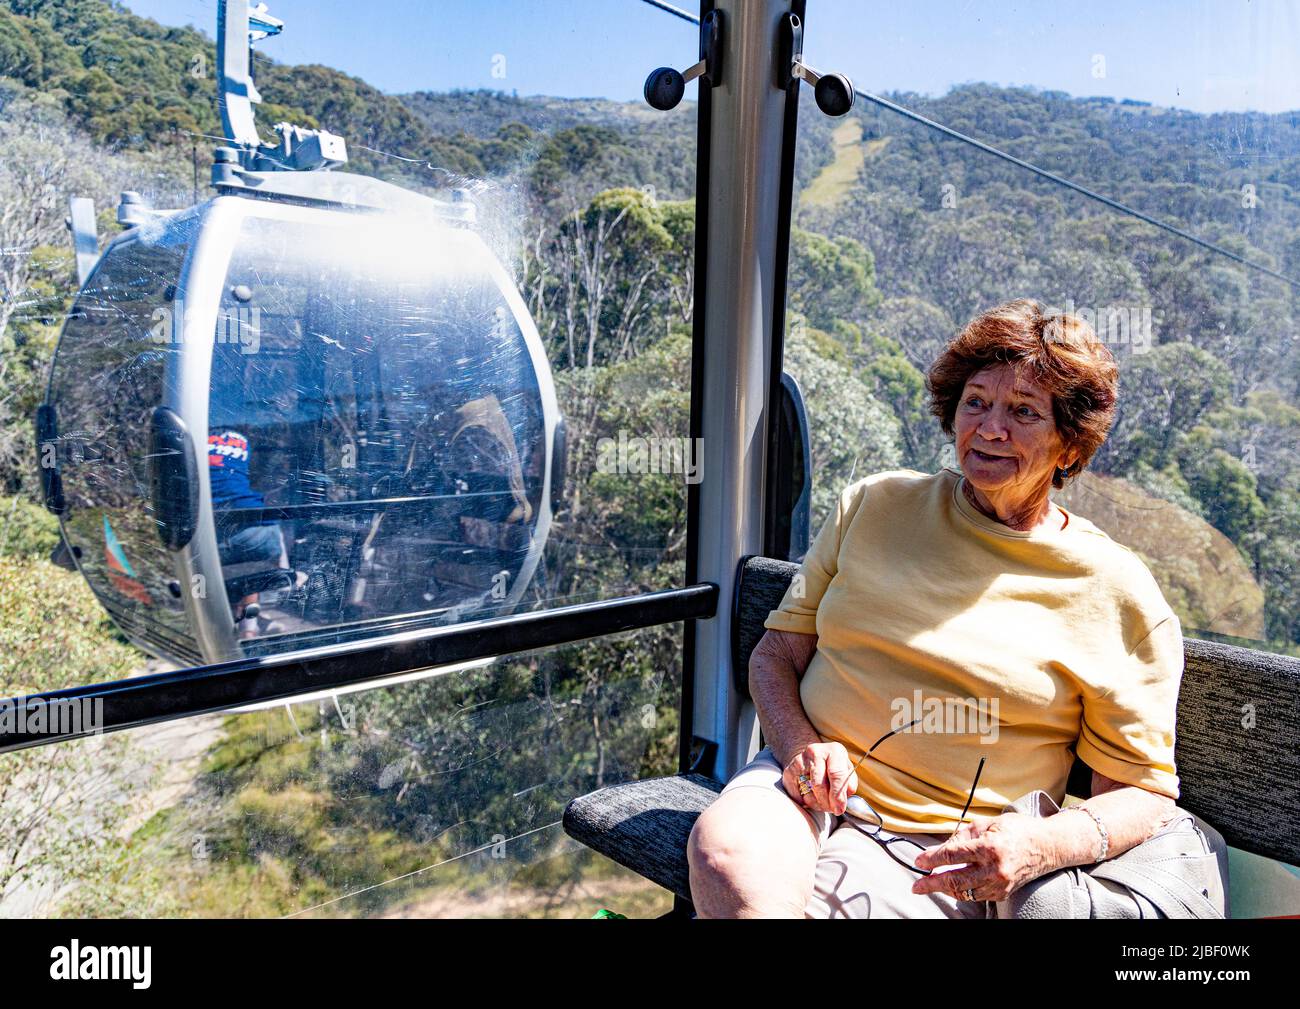 single; lone;  female; woman;  tourist; riding in gondola; Thredbo; sunny day; scenic ride; Stock Photo